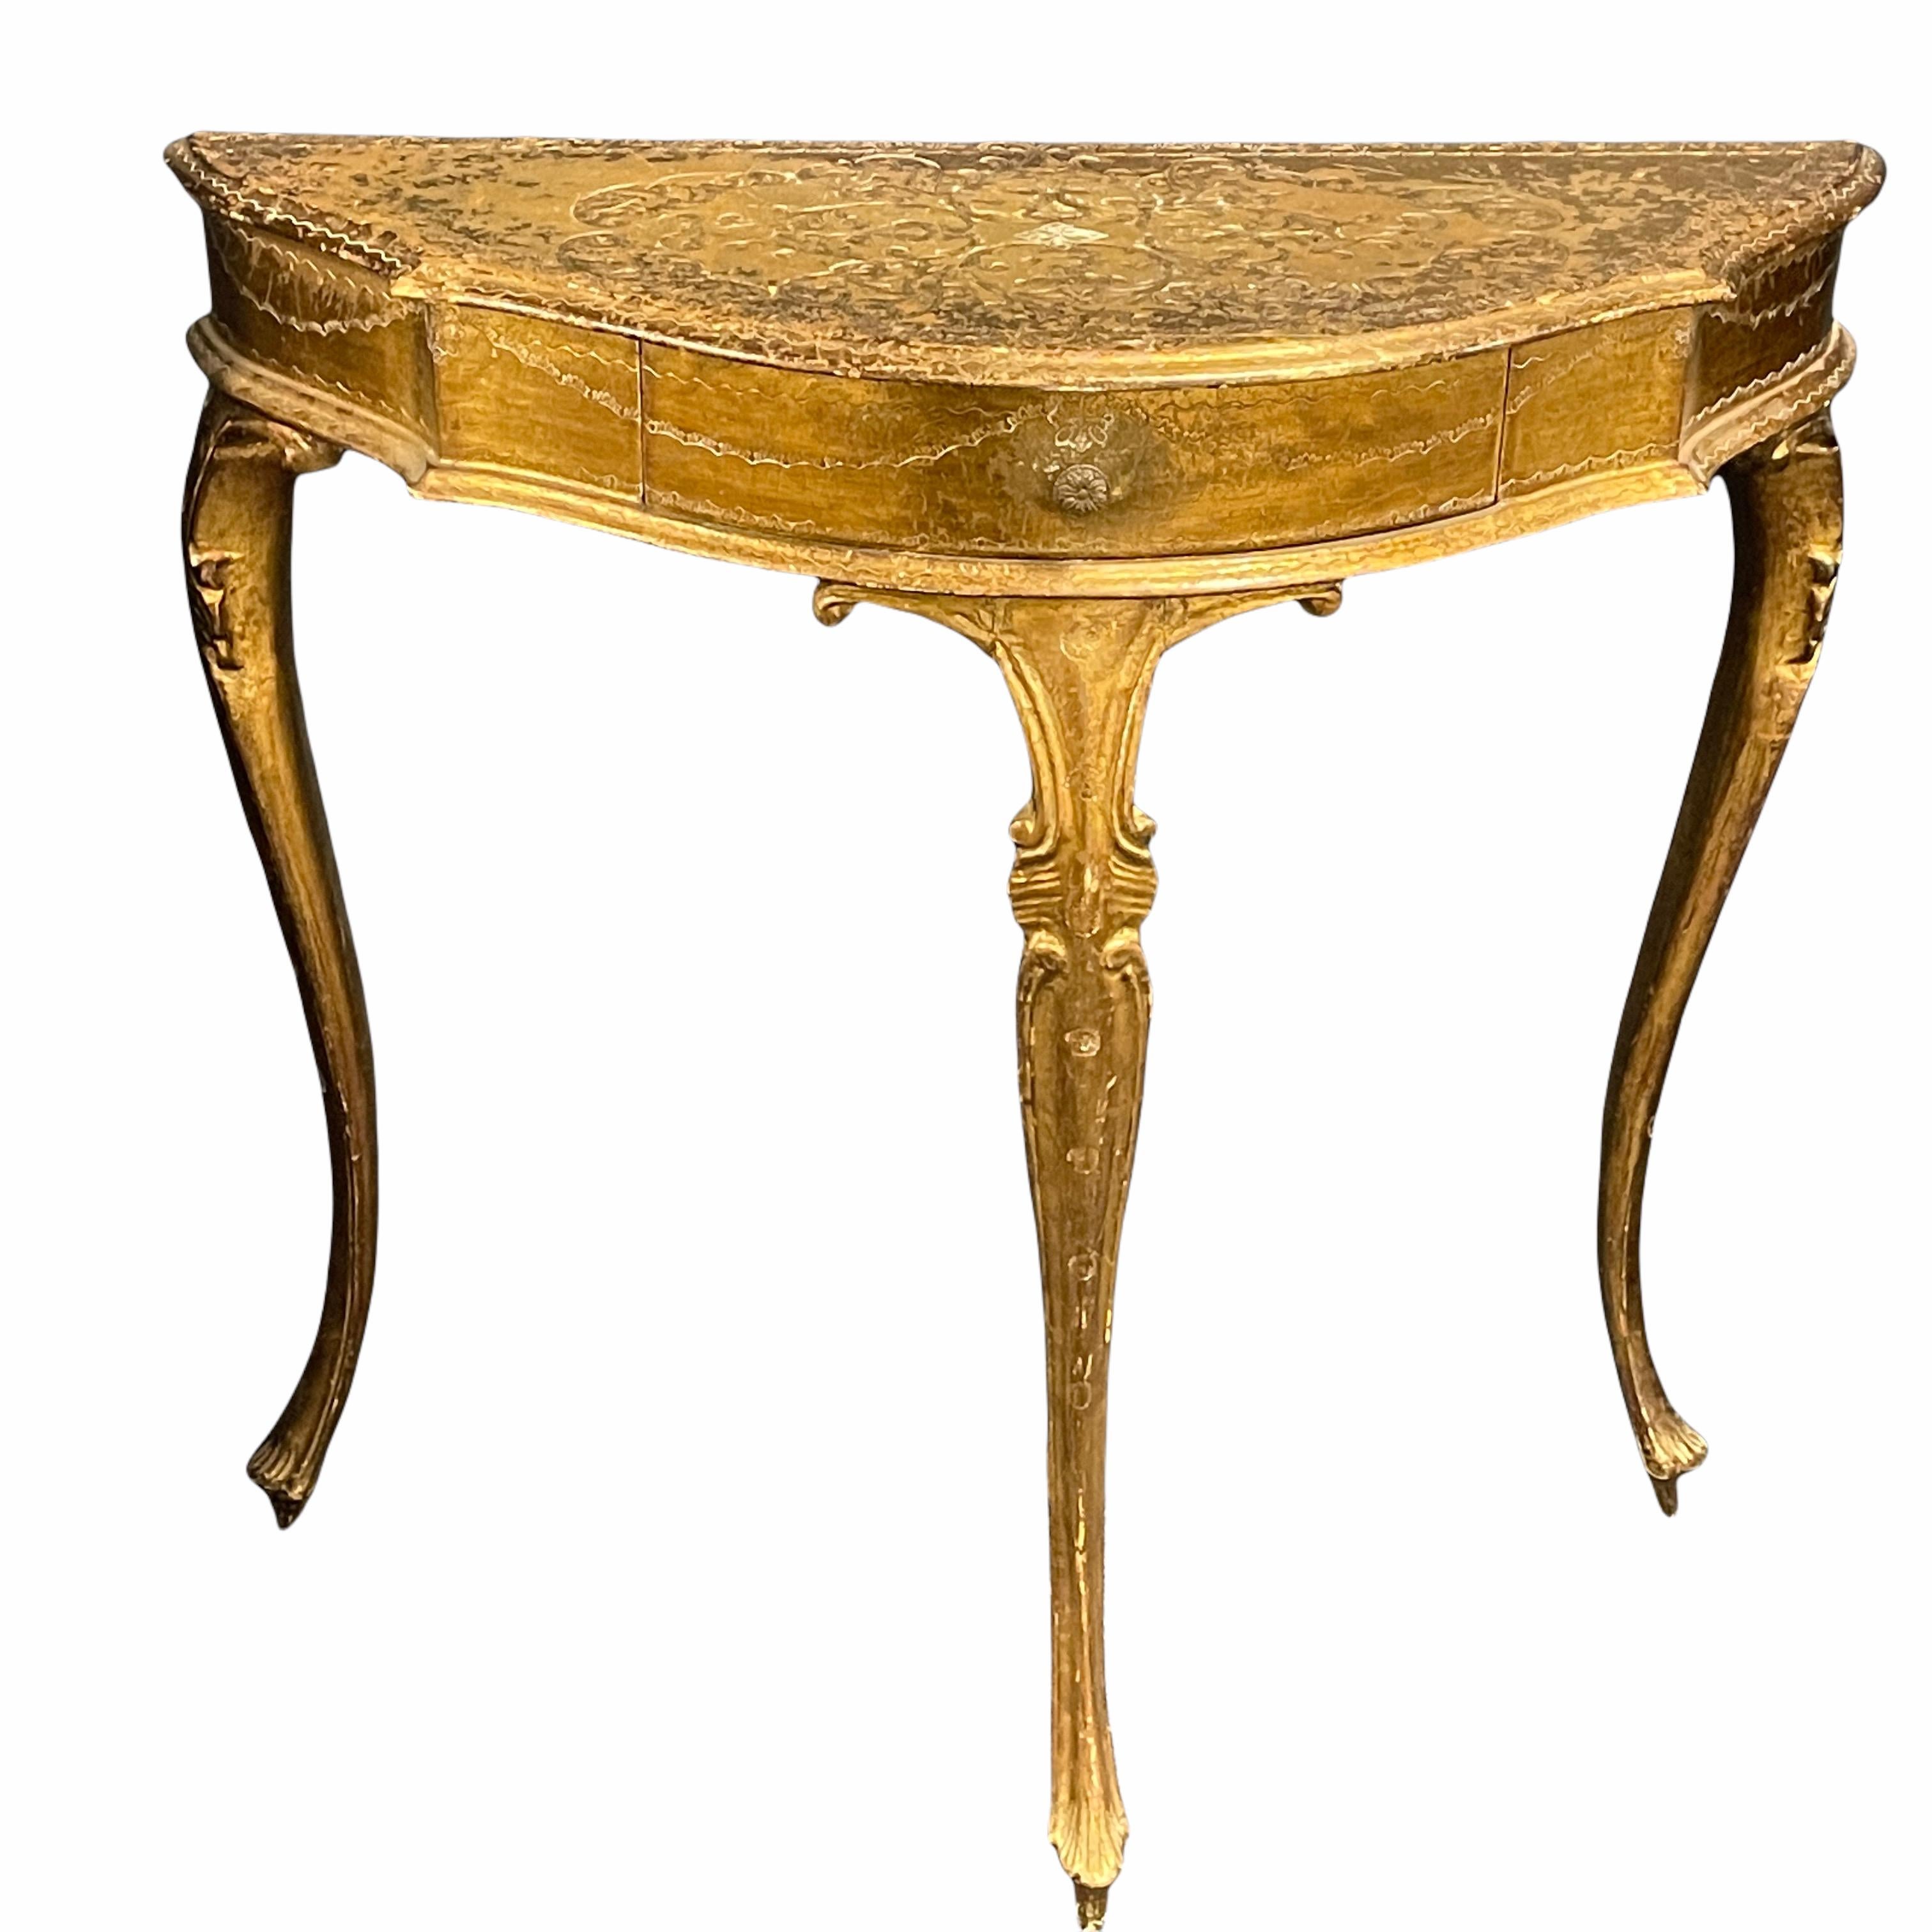 Belle table italienne florentine peinte avec des tiroirs. Parfait comme table de chevet, à côté d'un fauteuil de lecture ou utilisé comme petite table de toilette. Il pourrait également être idéal au bout d'un couloir étroit, avec un miroir ou une